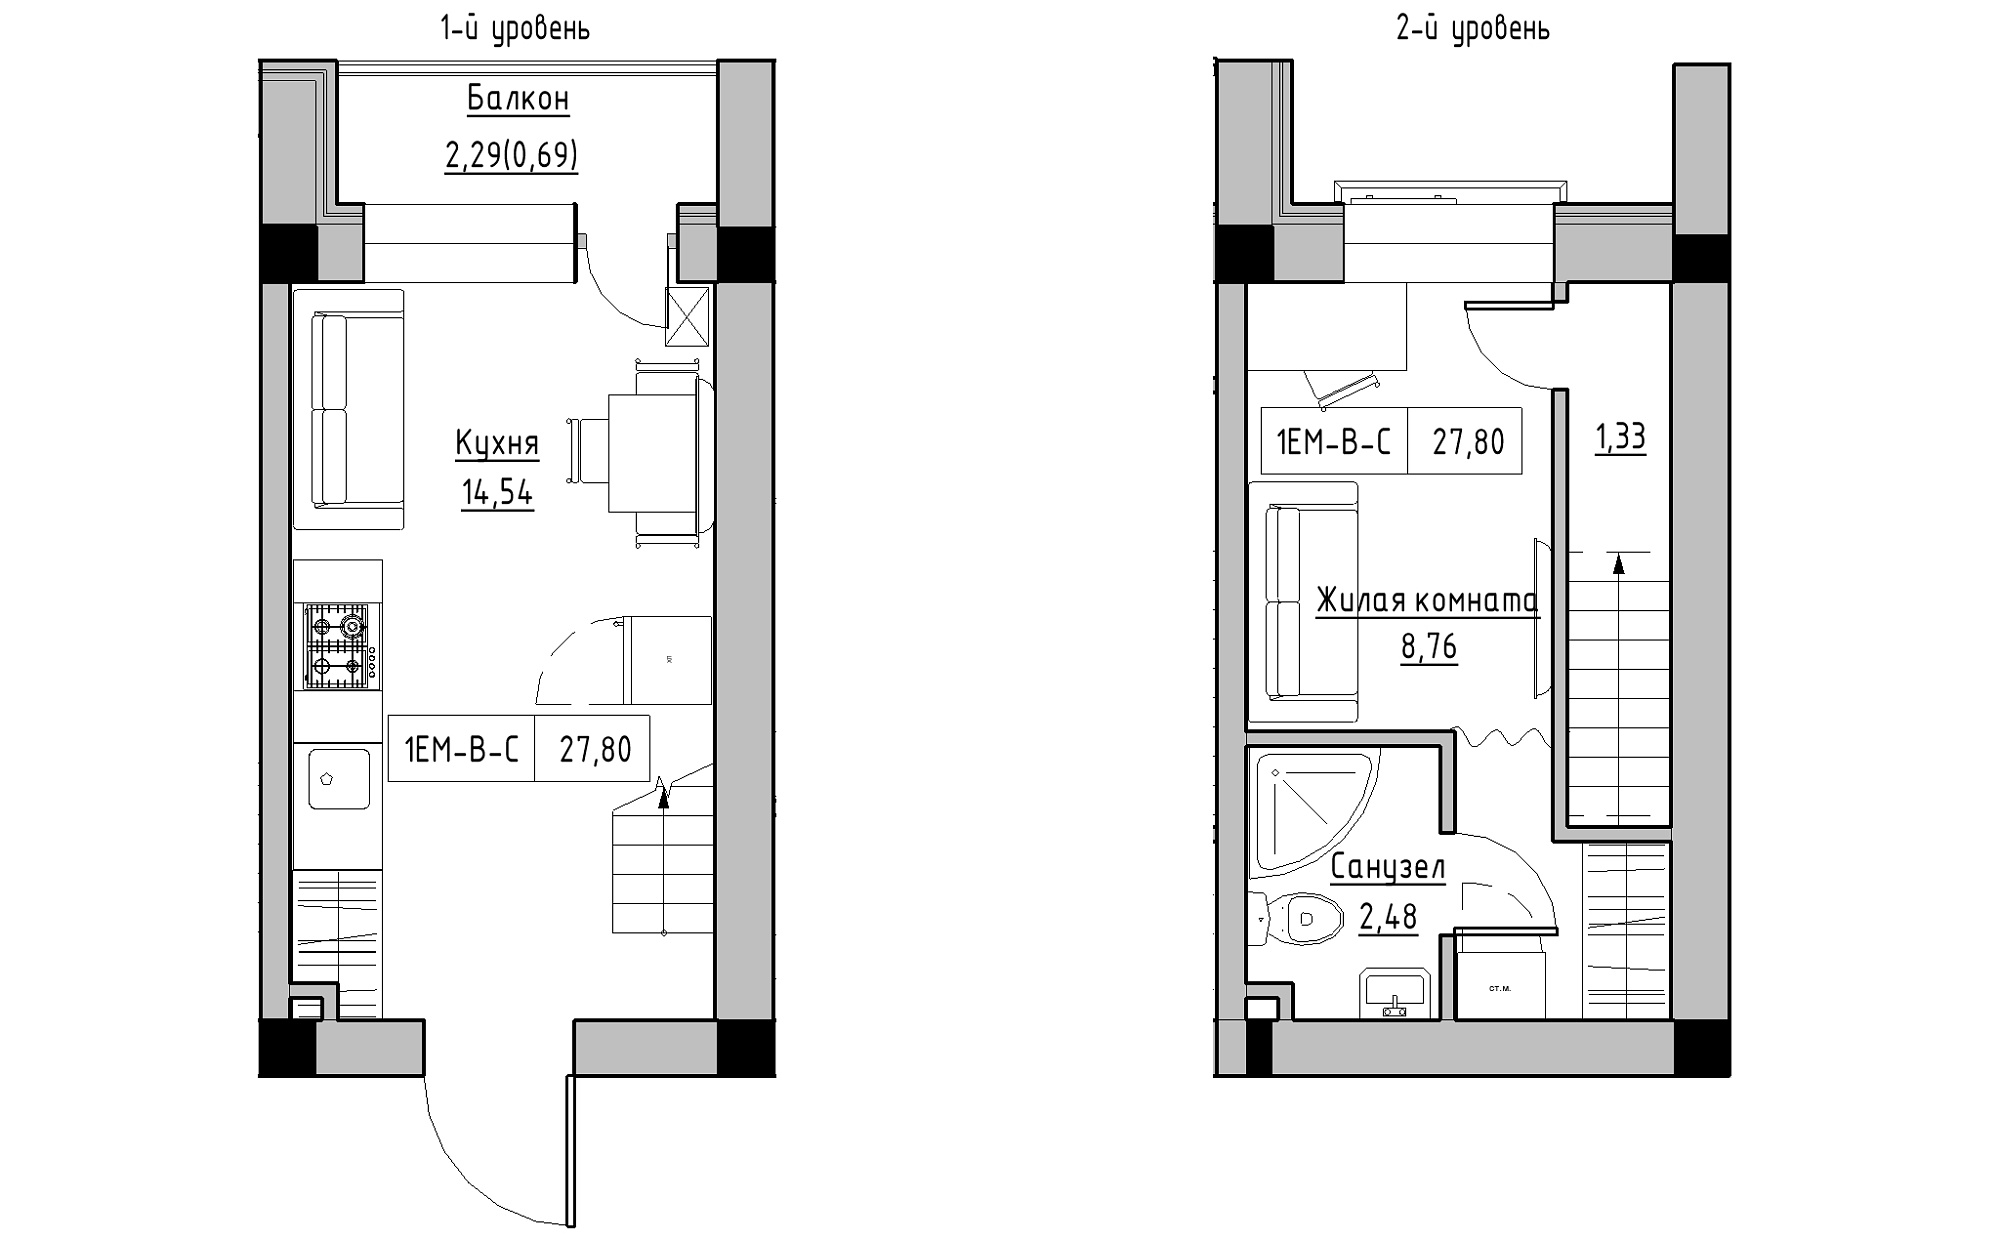 Planning 2-lvl flats area 27.8m2, KS-022-05/0010.